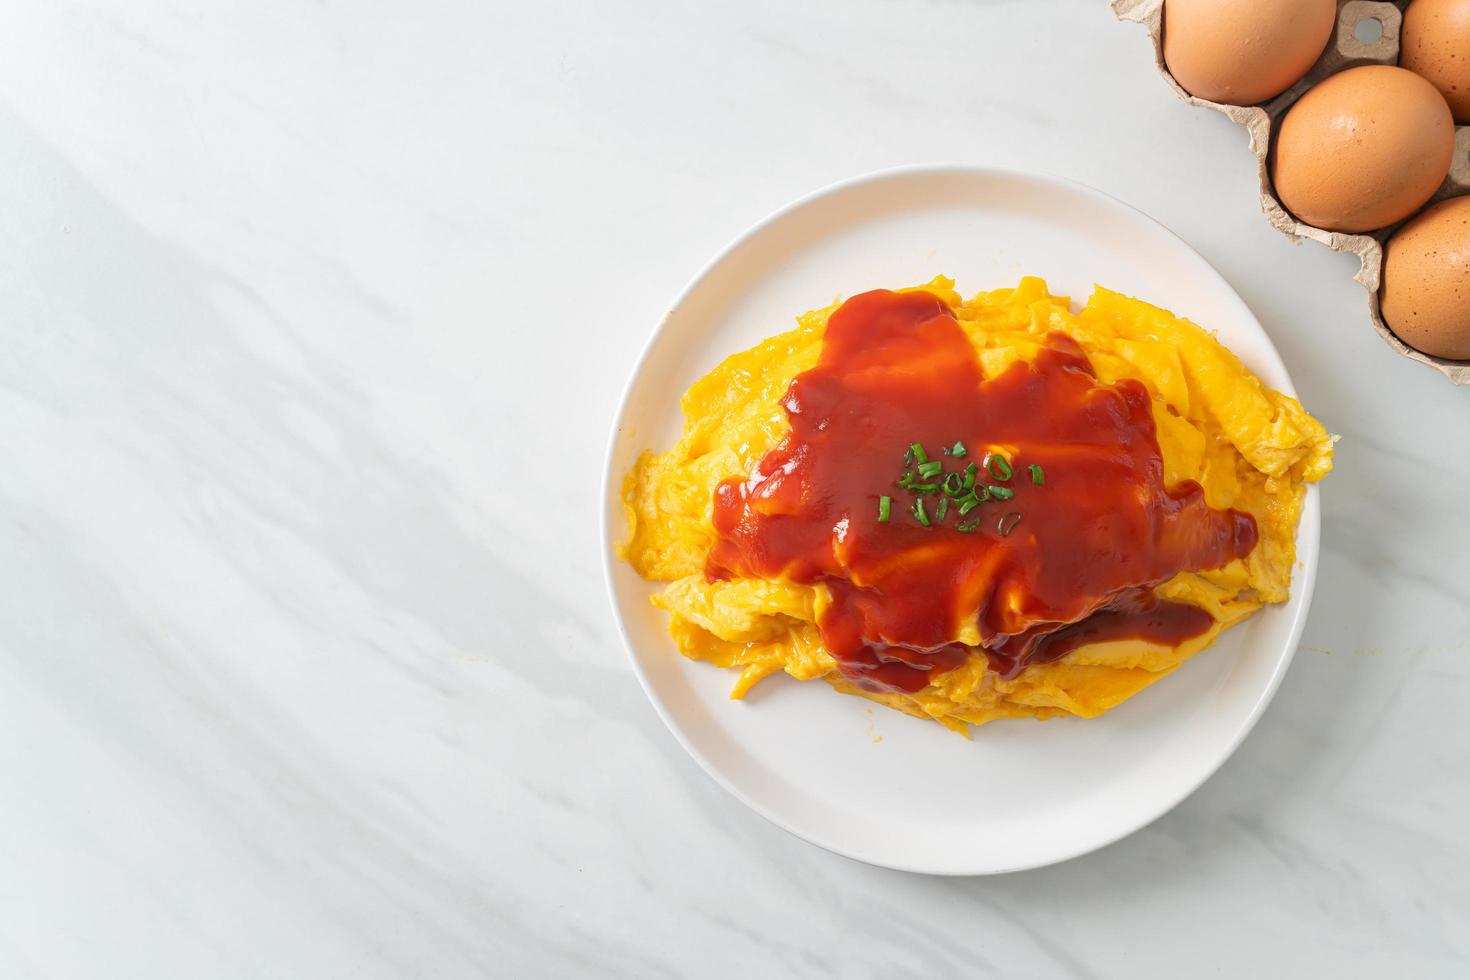 arroz frito aromatizado em embalagem de omelete foto